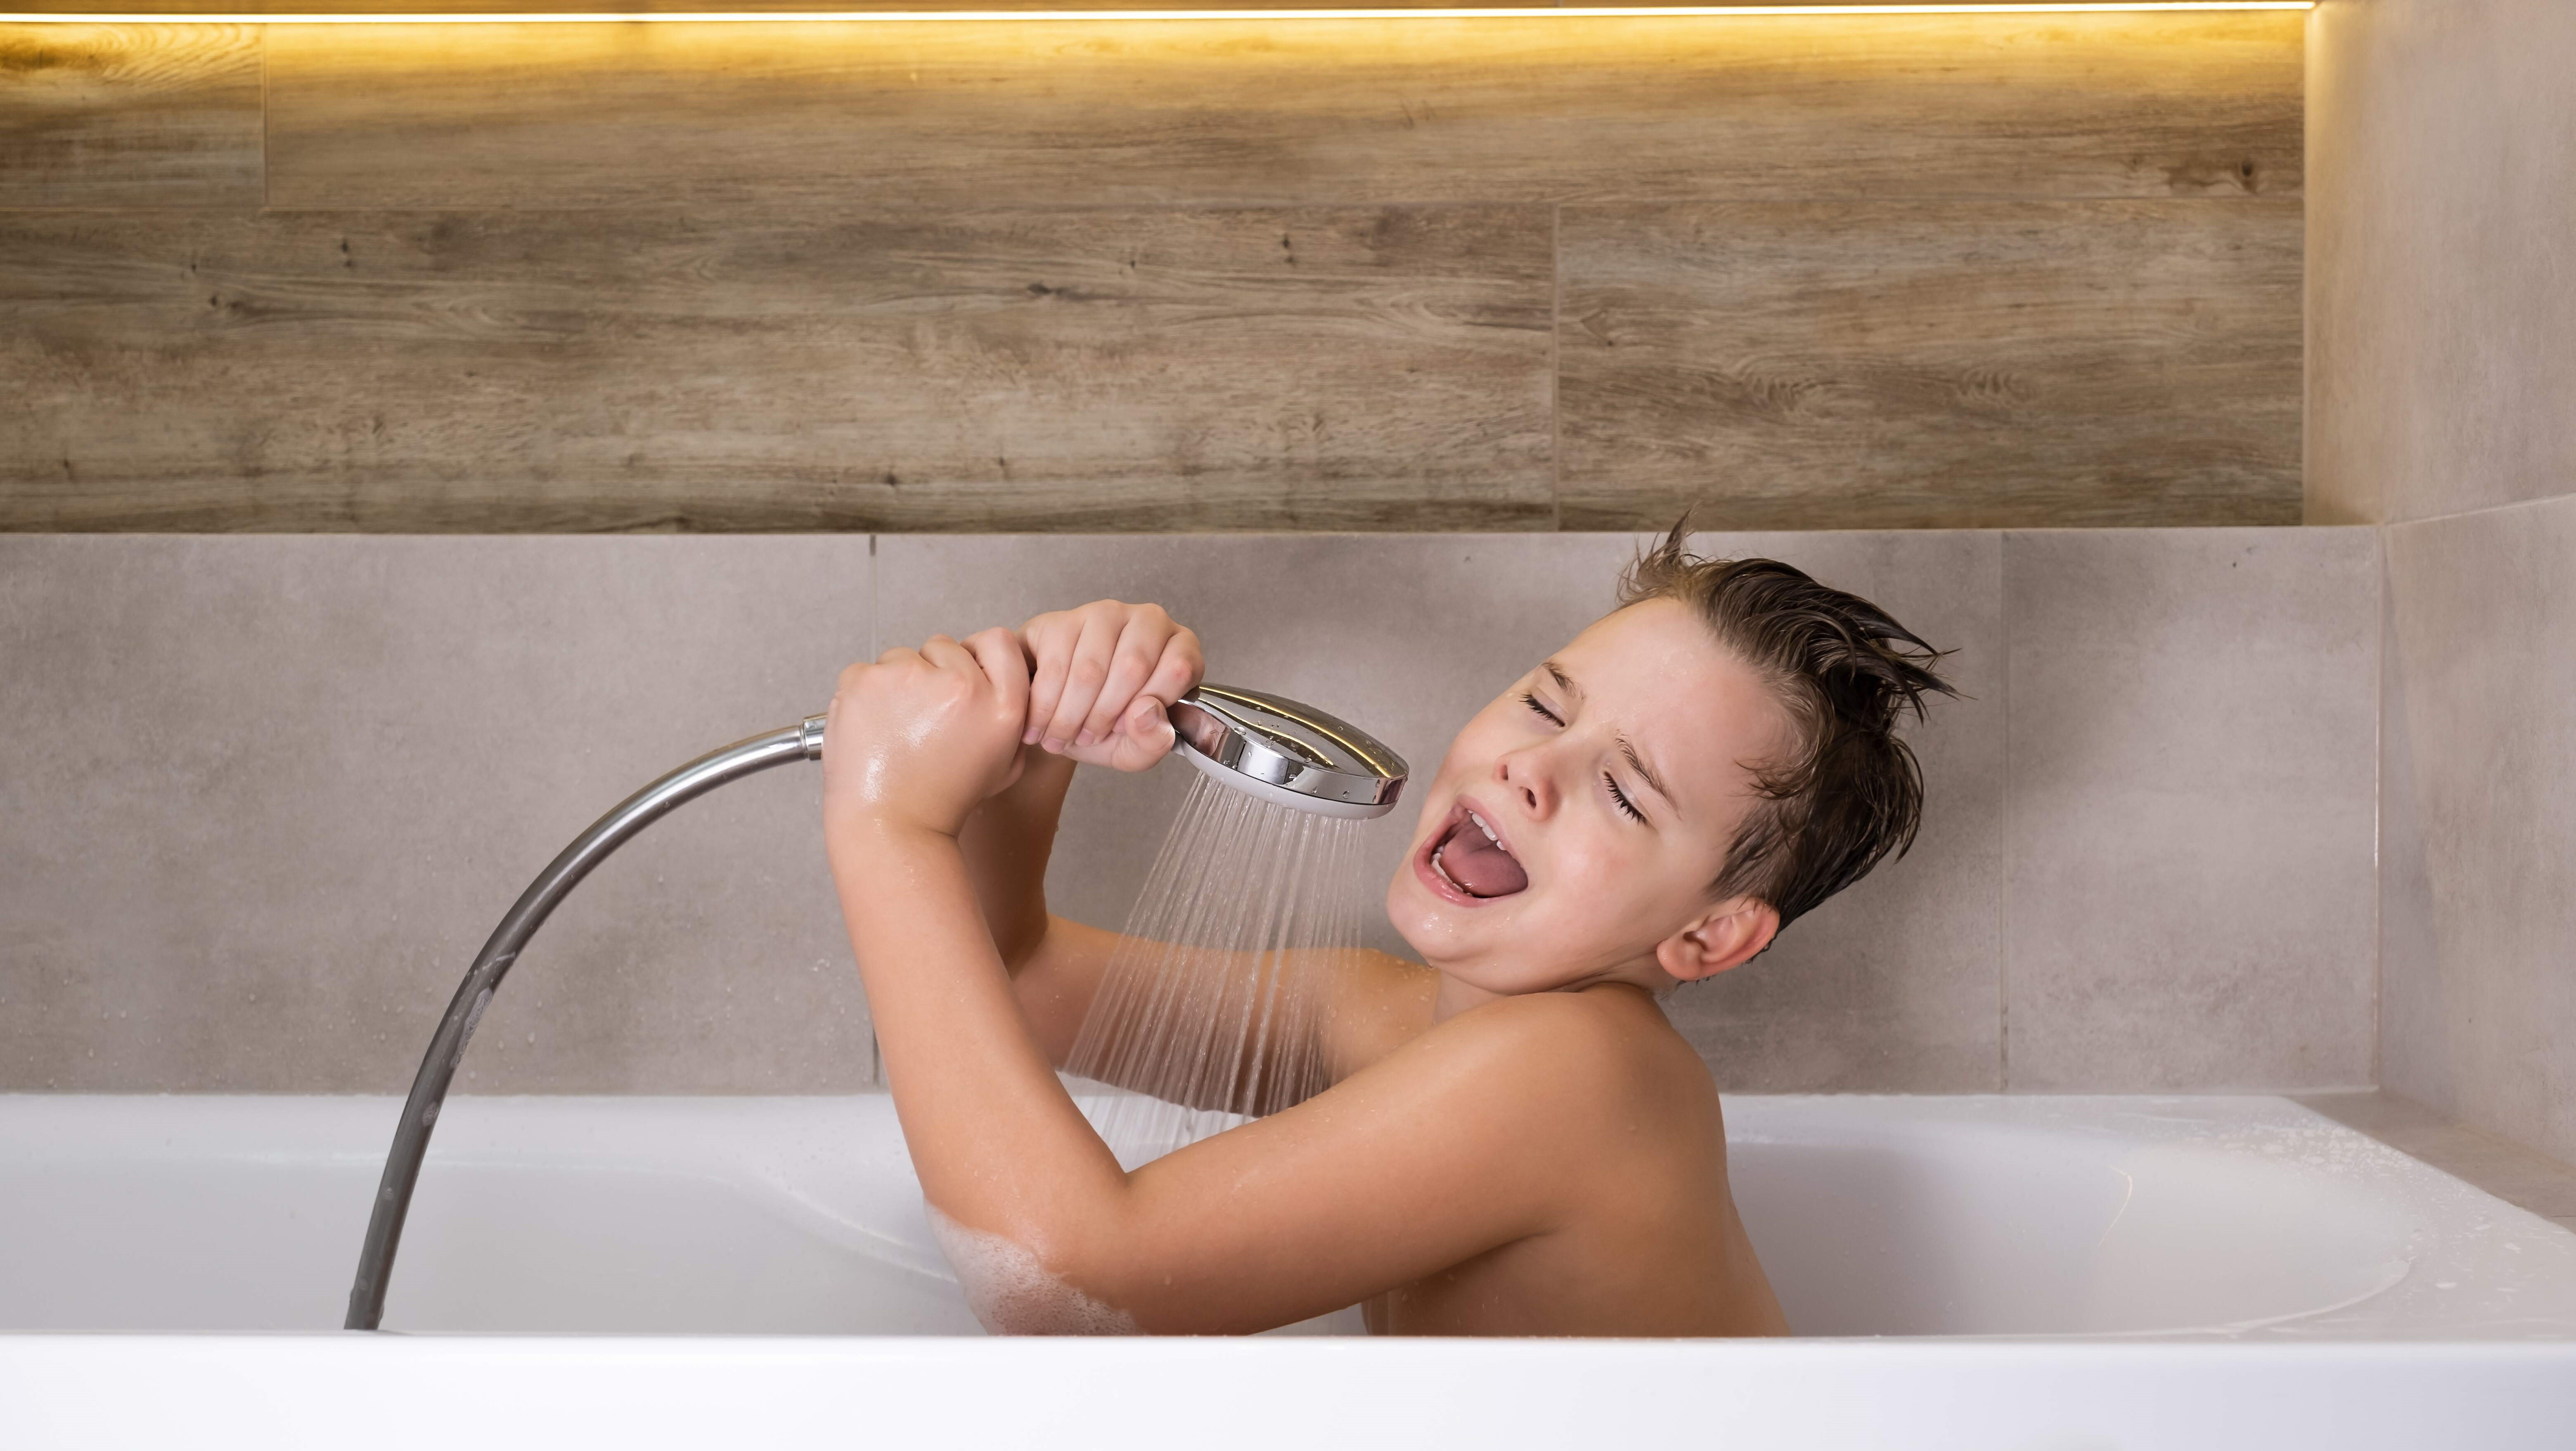 boy in bath with shower head